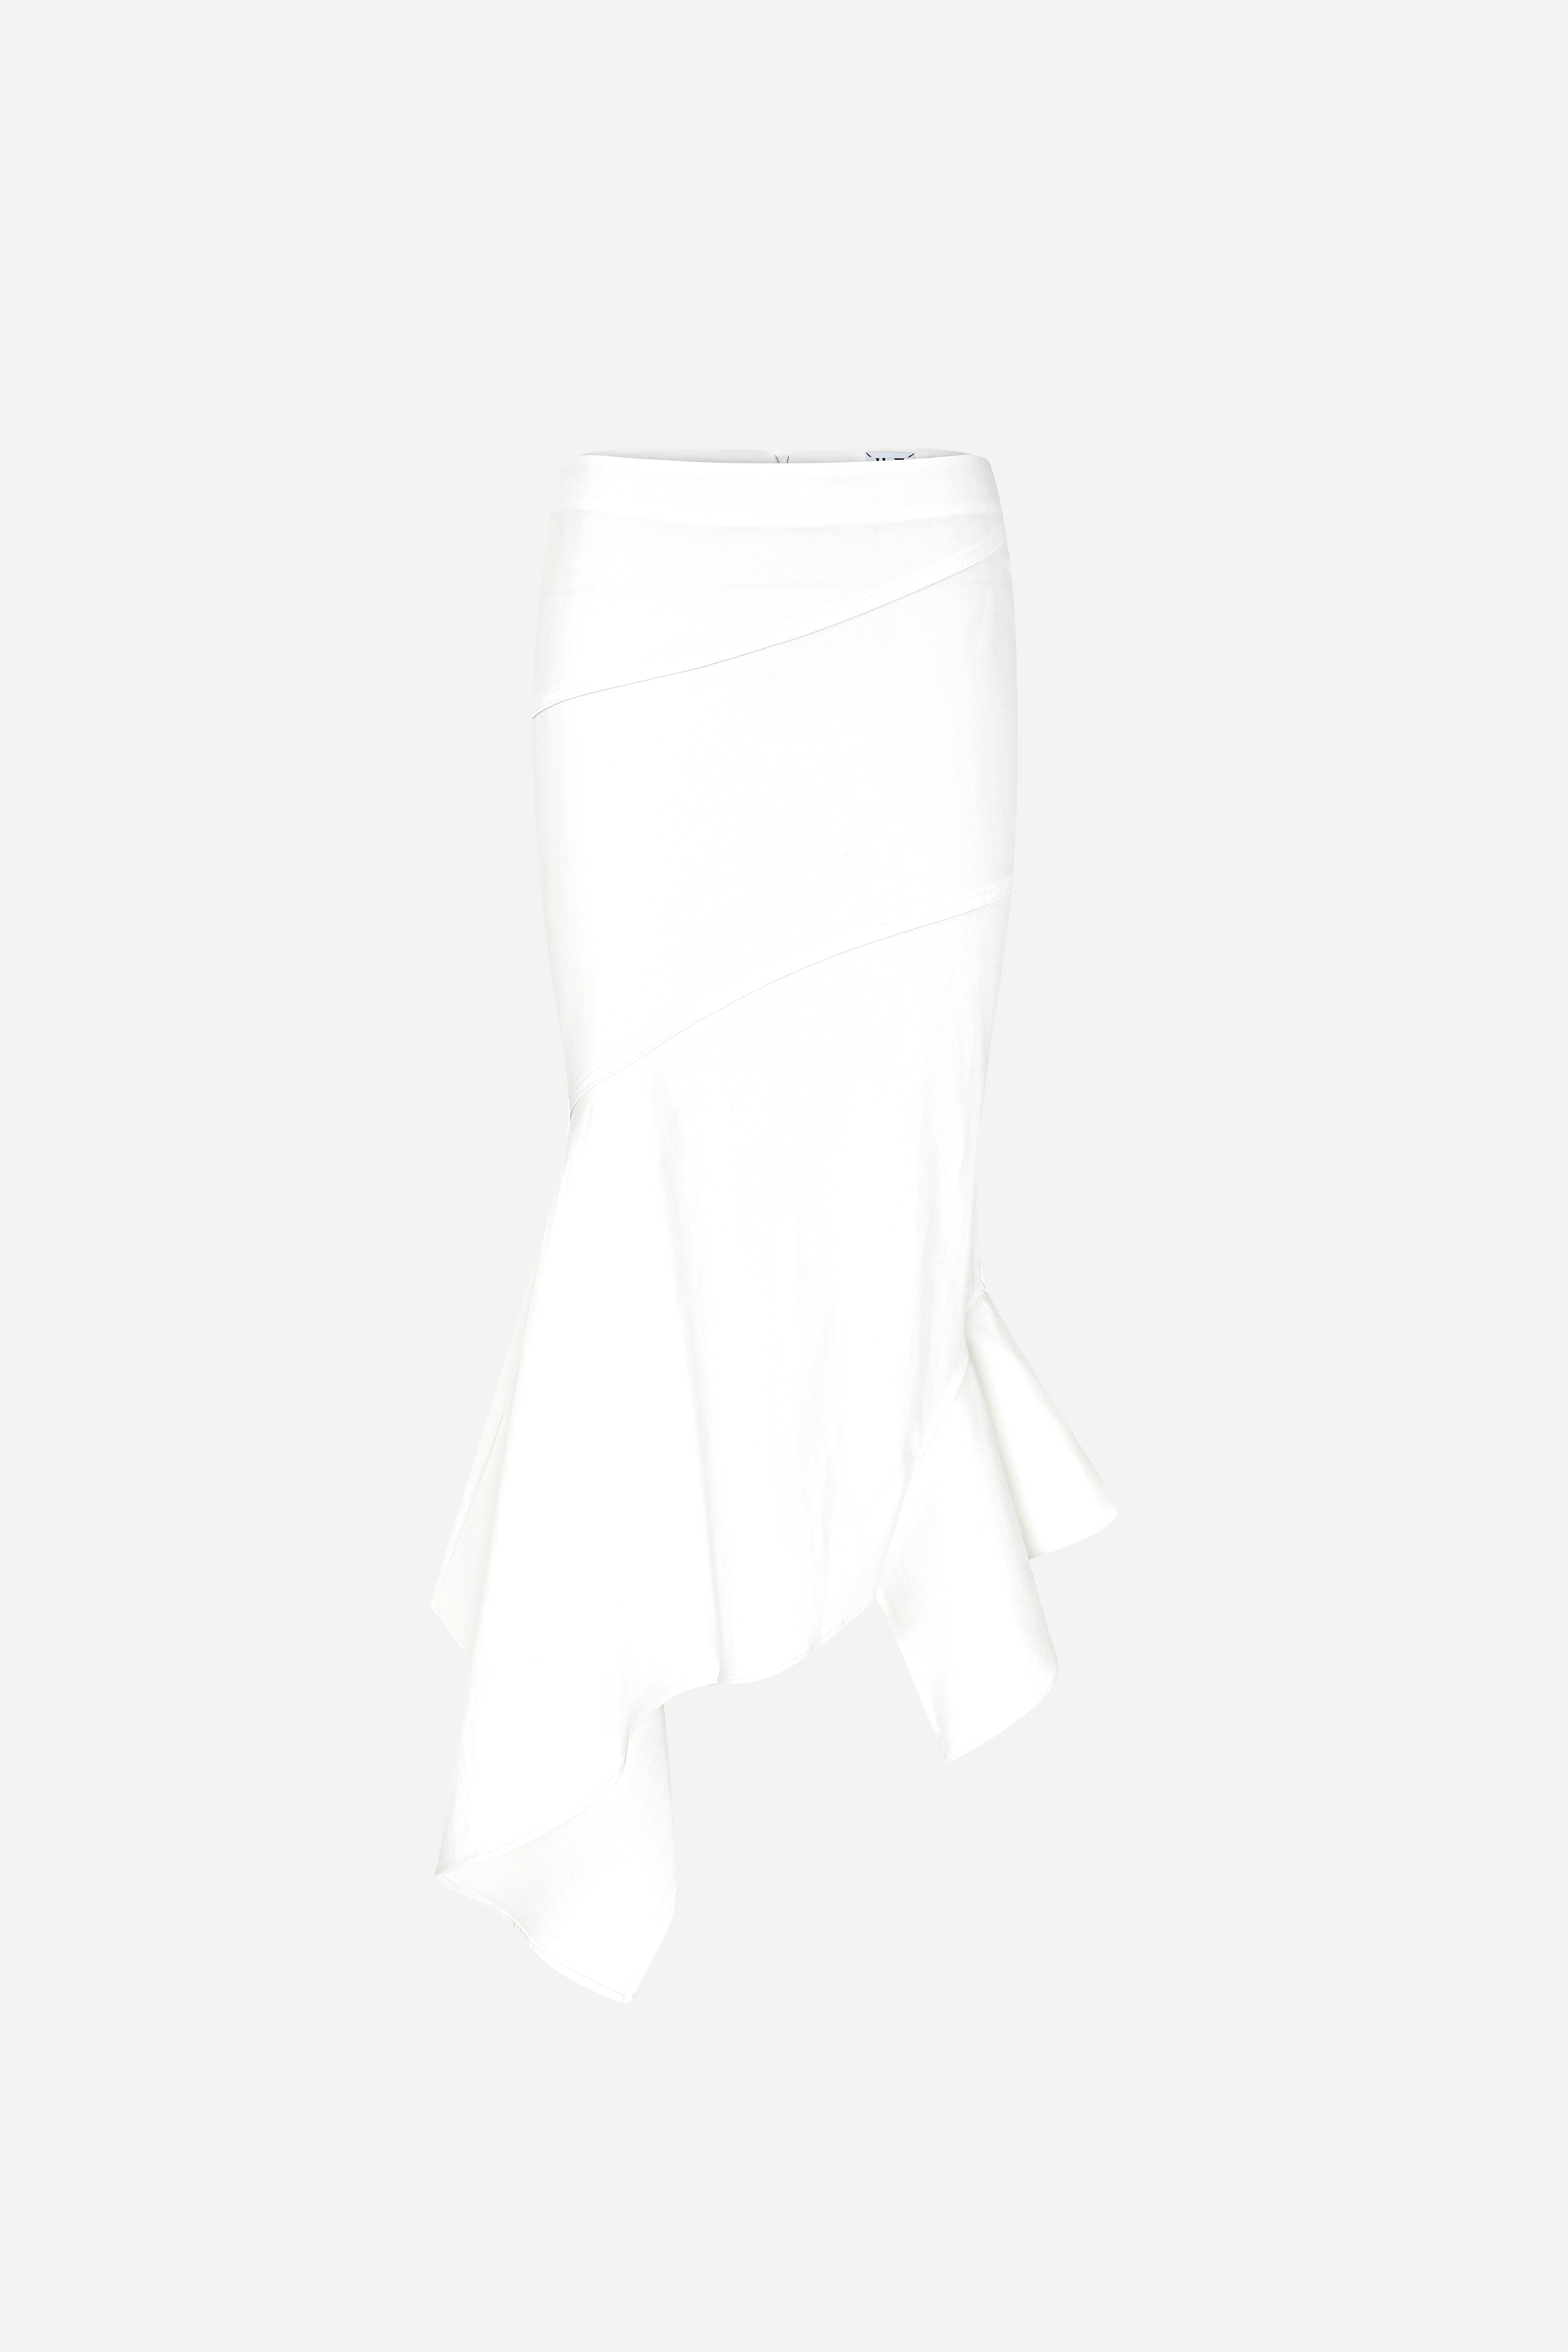 Lin - Midi Skirt With Asymmetrical Hem